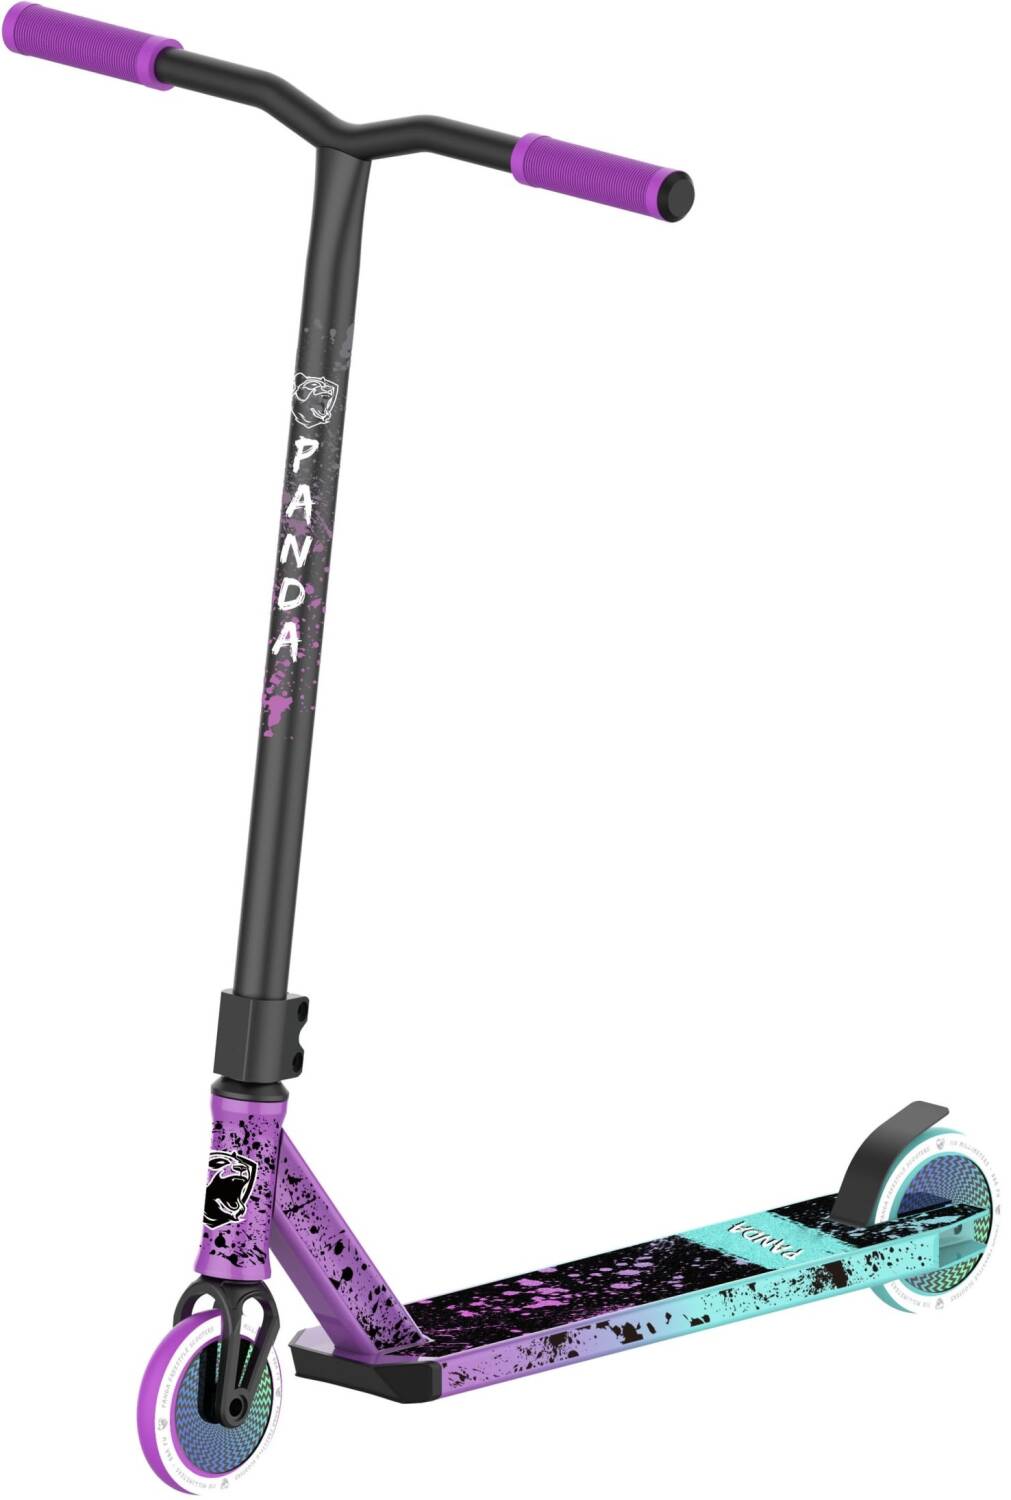 Panda Imber Pro Scooter - Purple